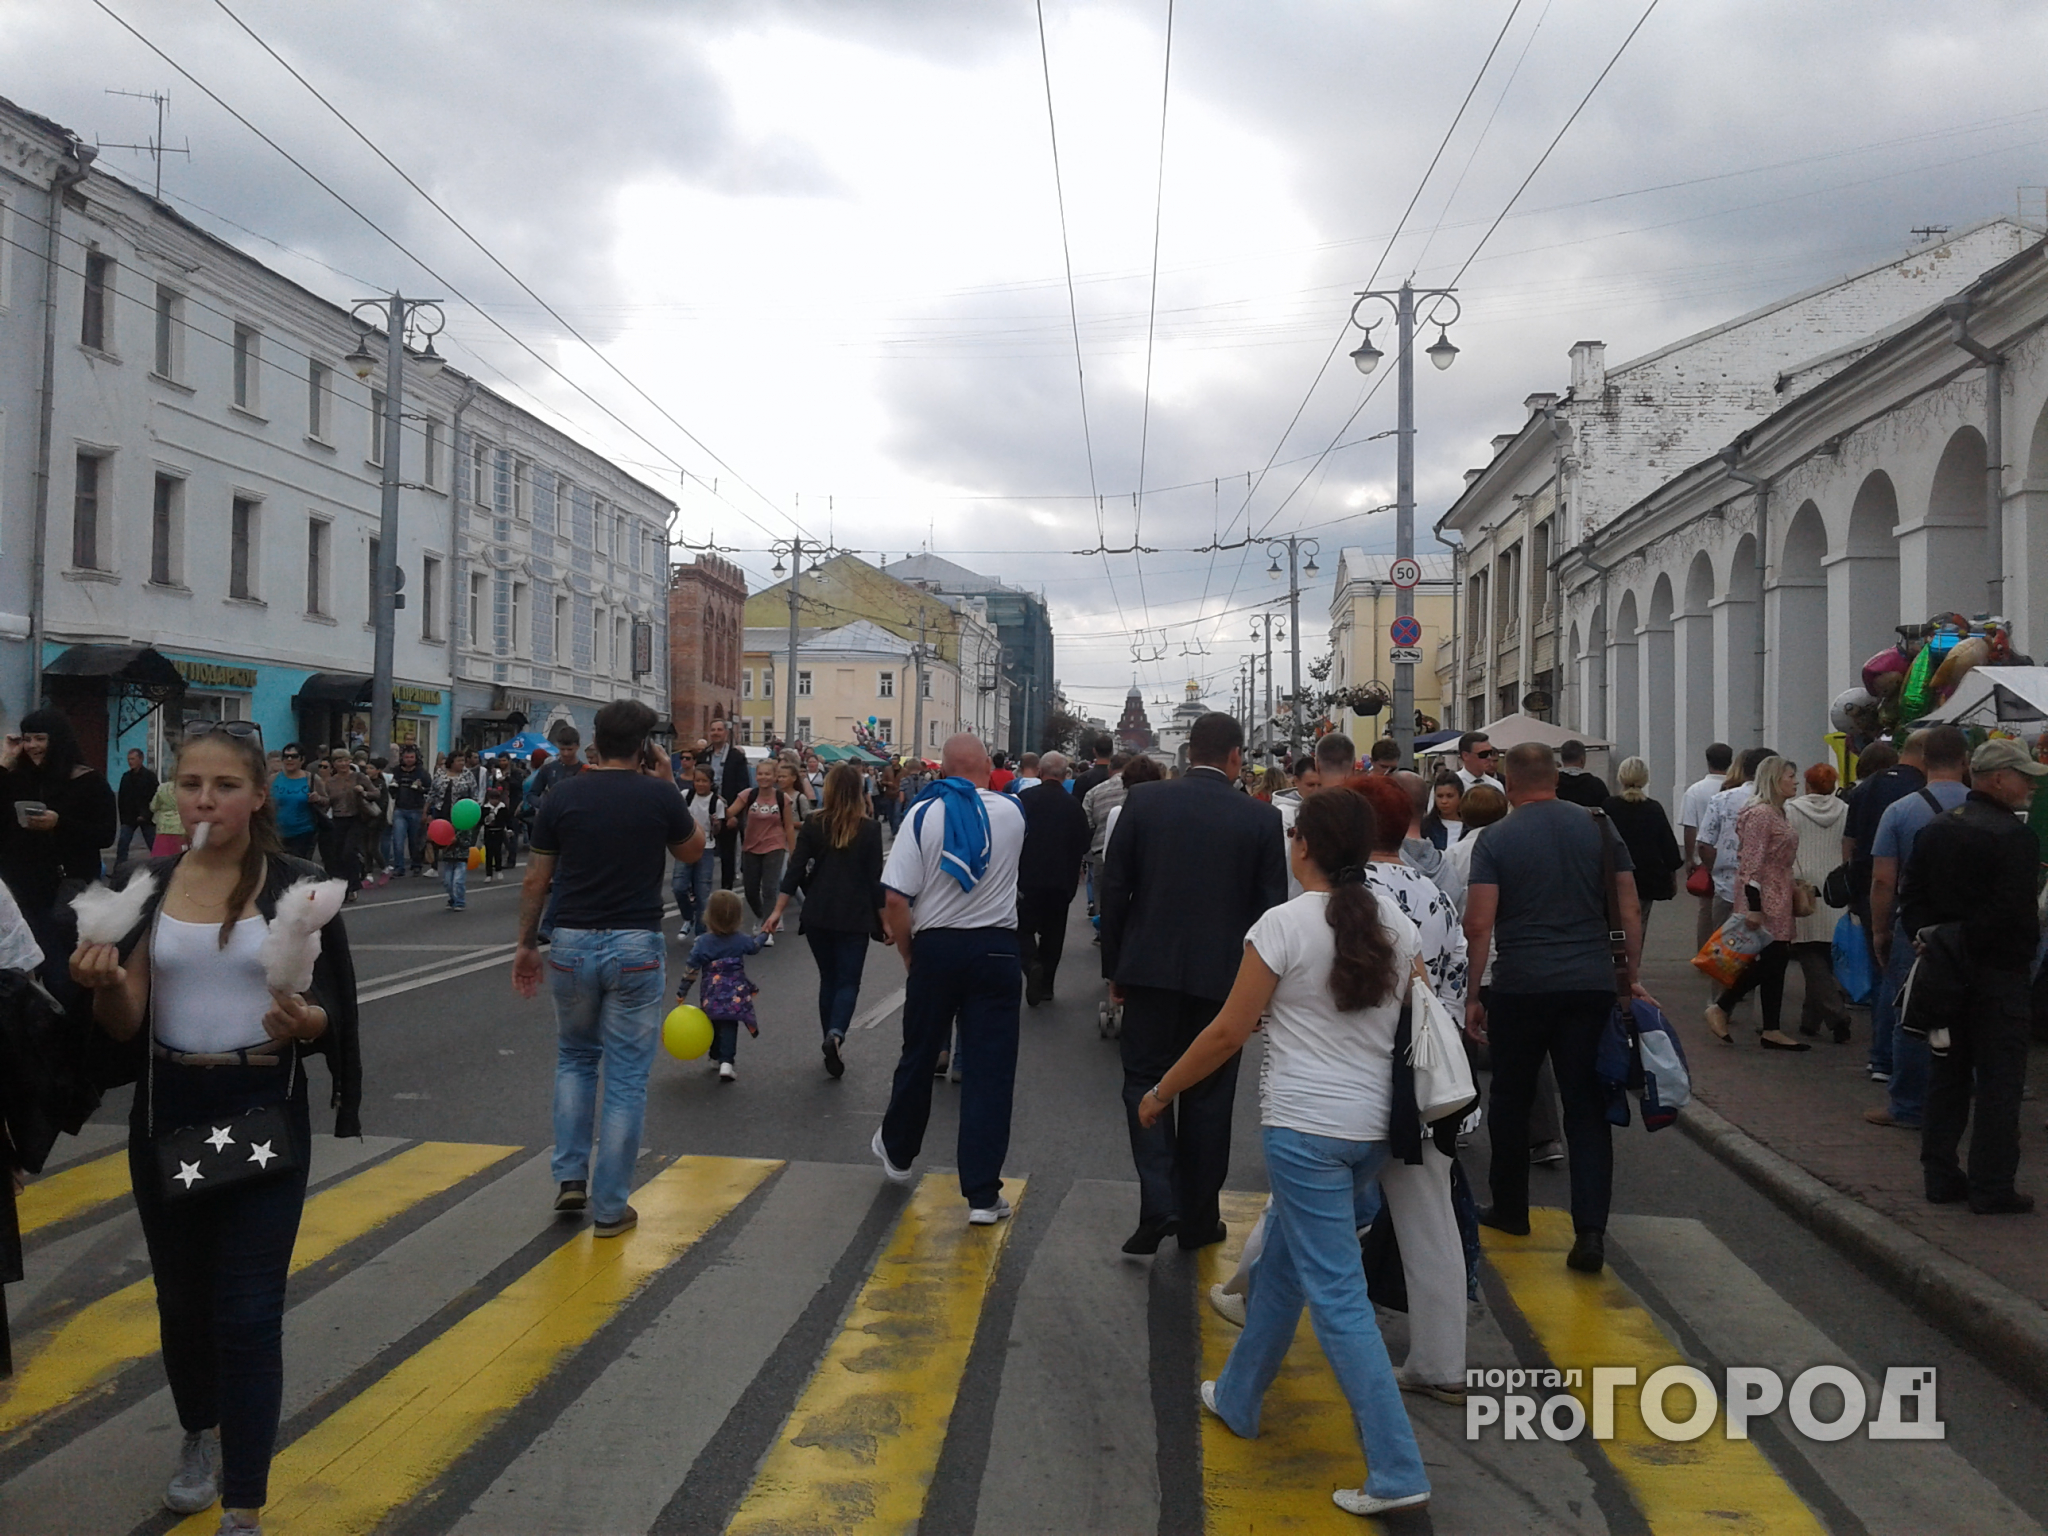 Владимир празднует свой день: репортаж с улиц города